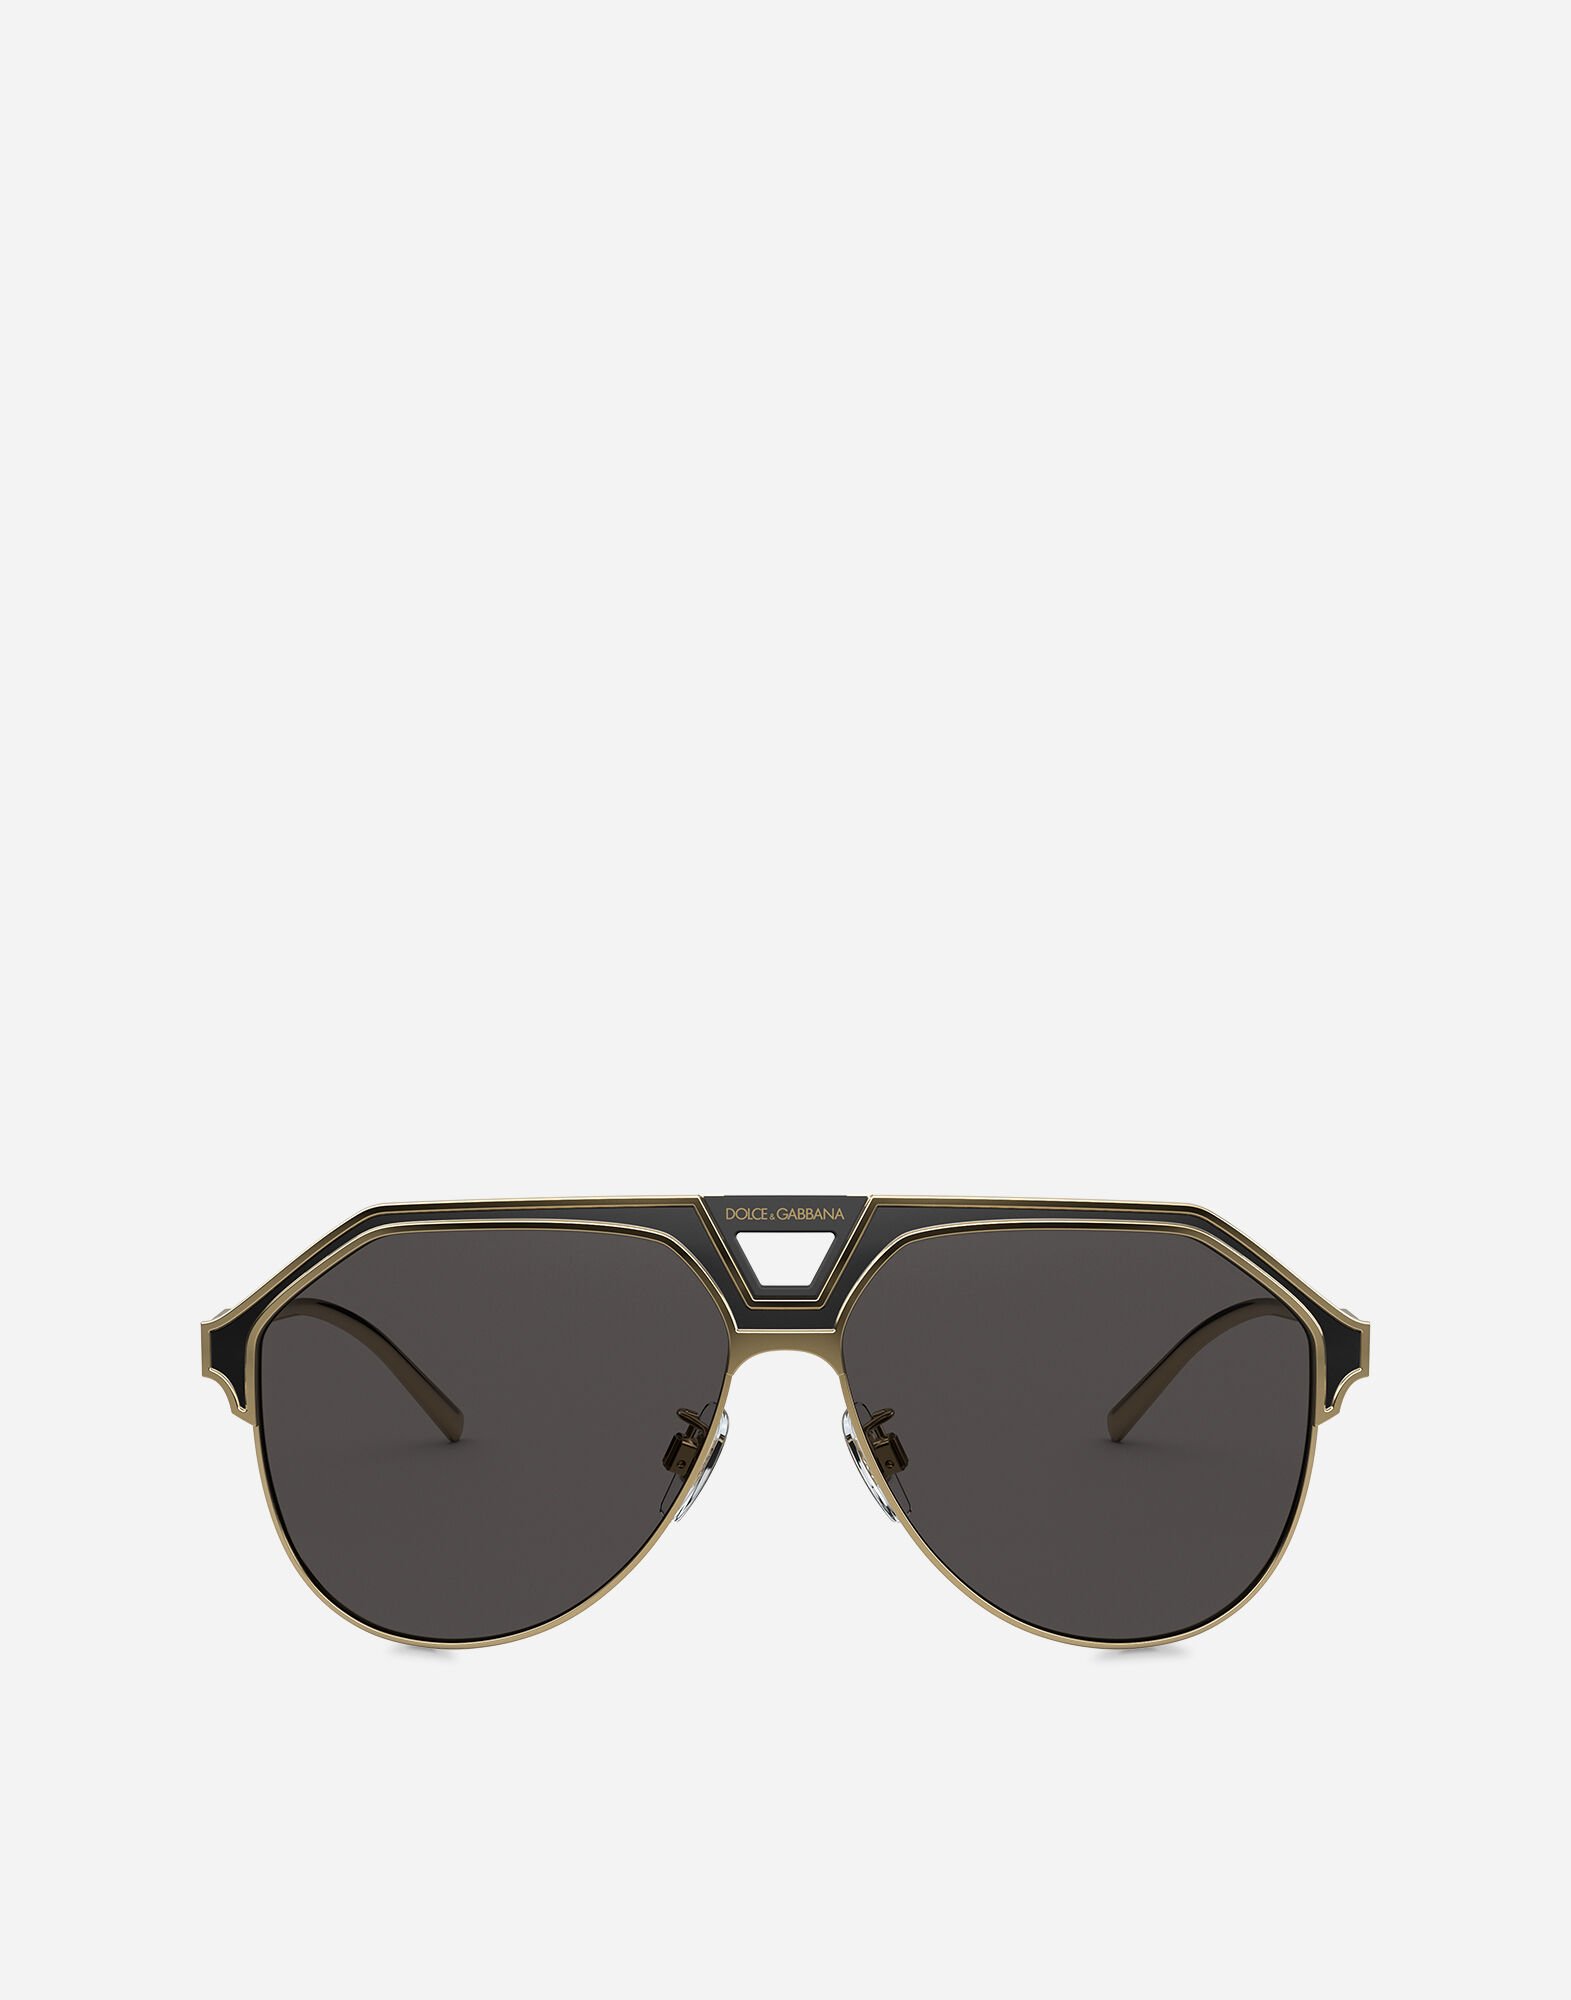 Dolce & Gabbana نظارة شمسية ميامي أسود و ذهبي VG2285VM281